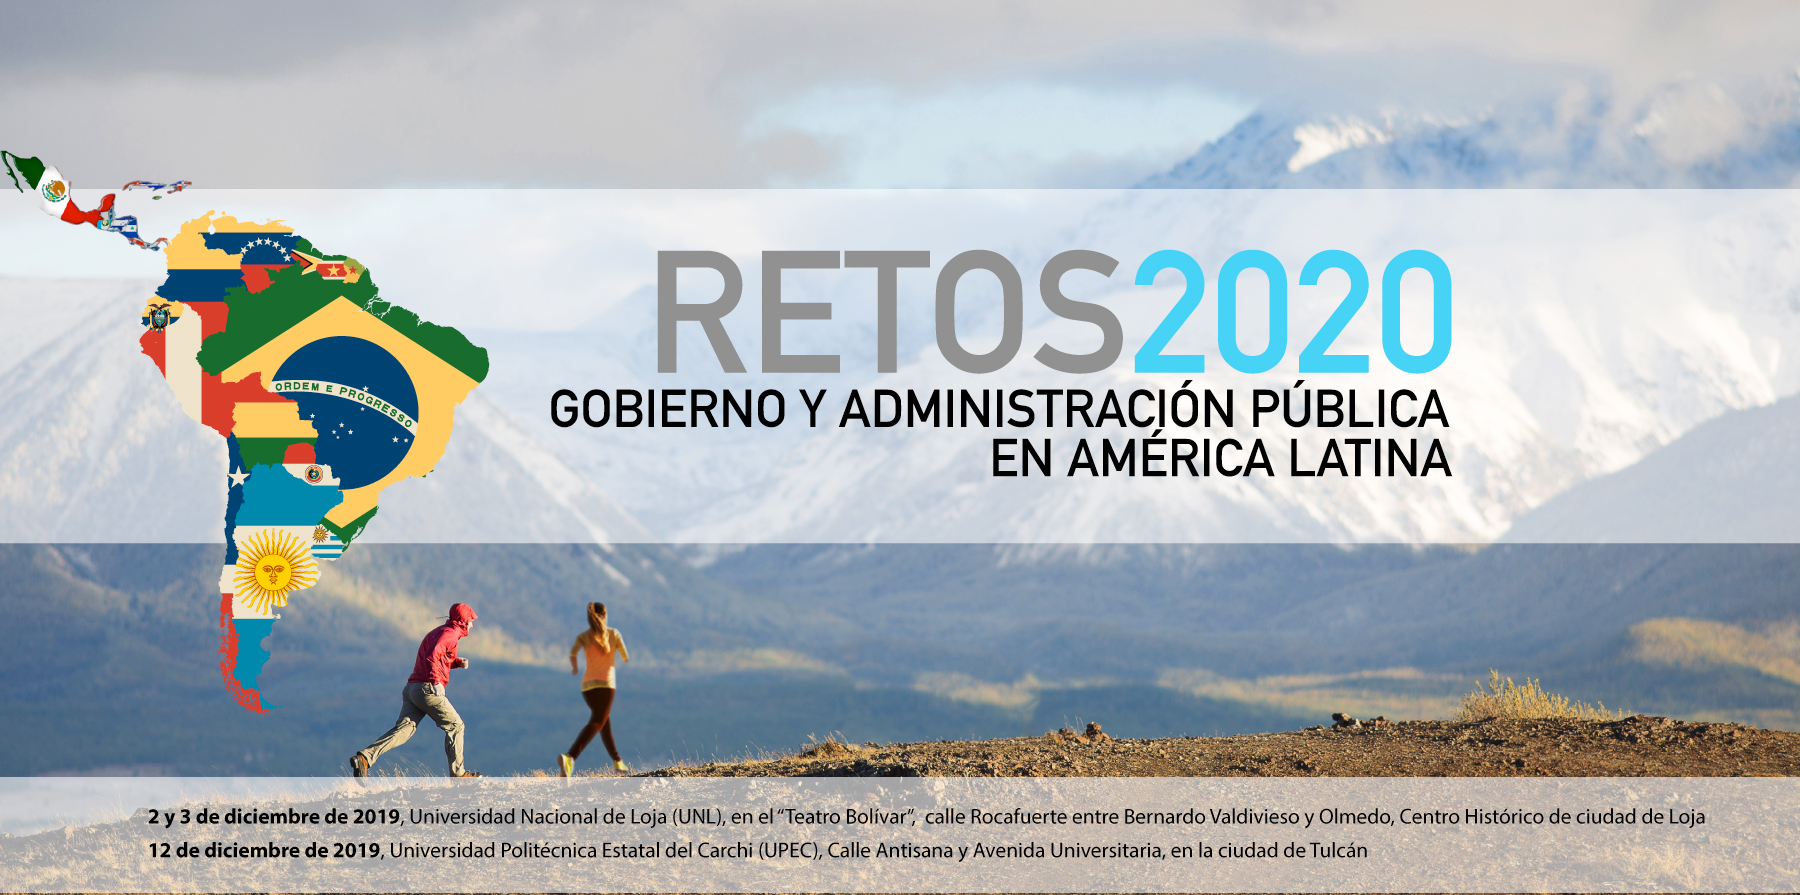 Retos 2020, Gobierno y Administración Pública en América Latina